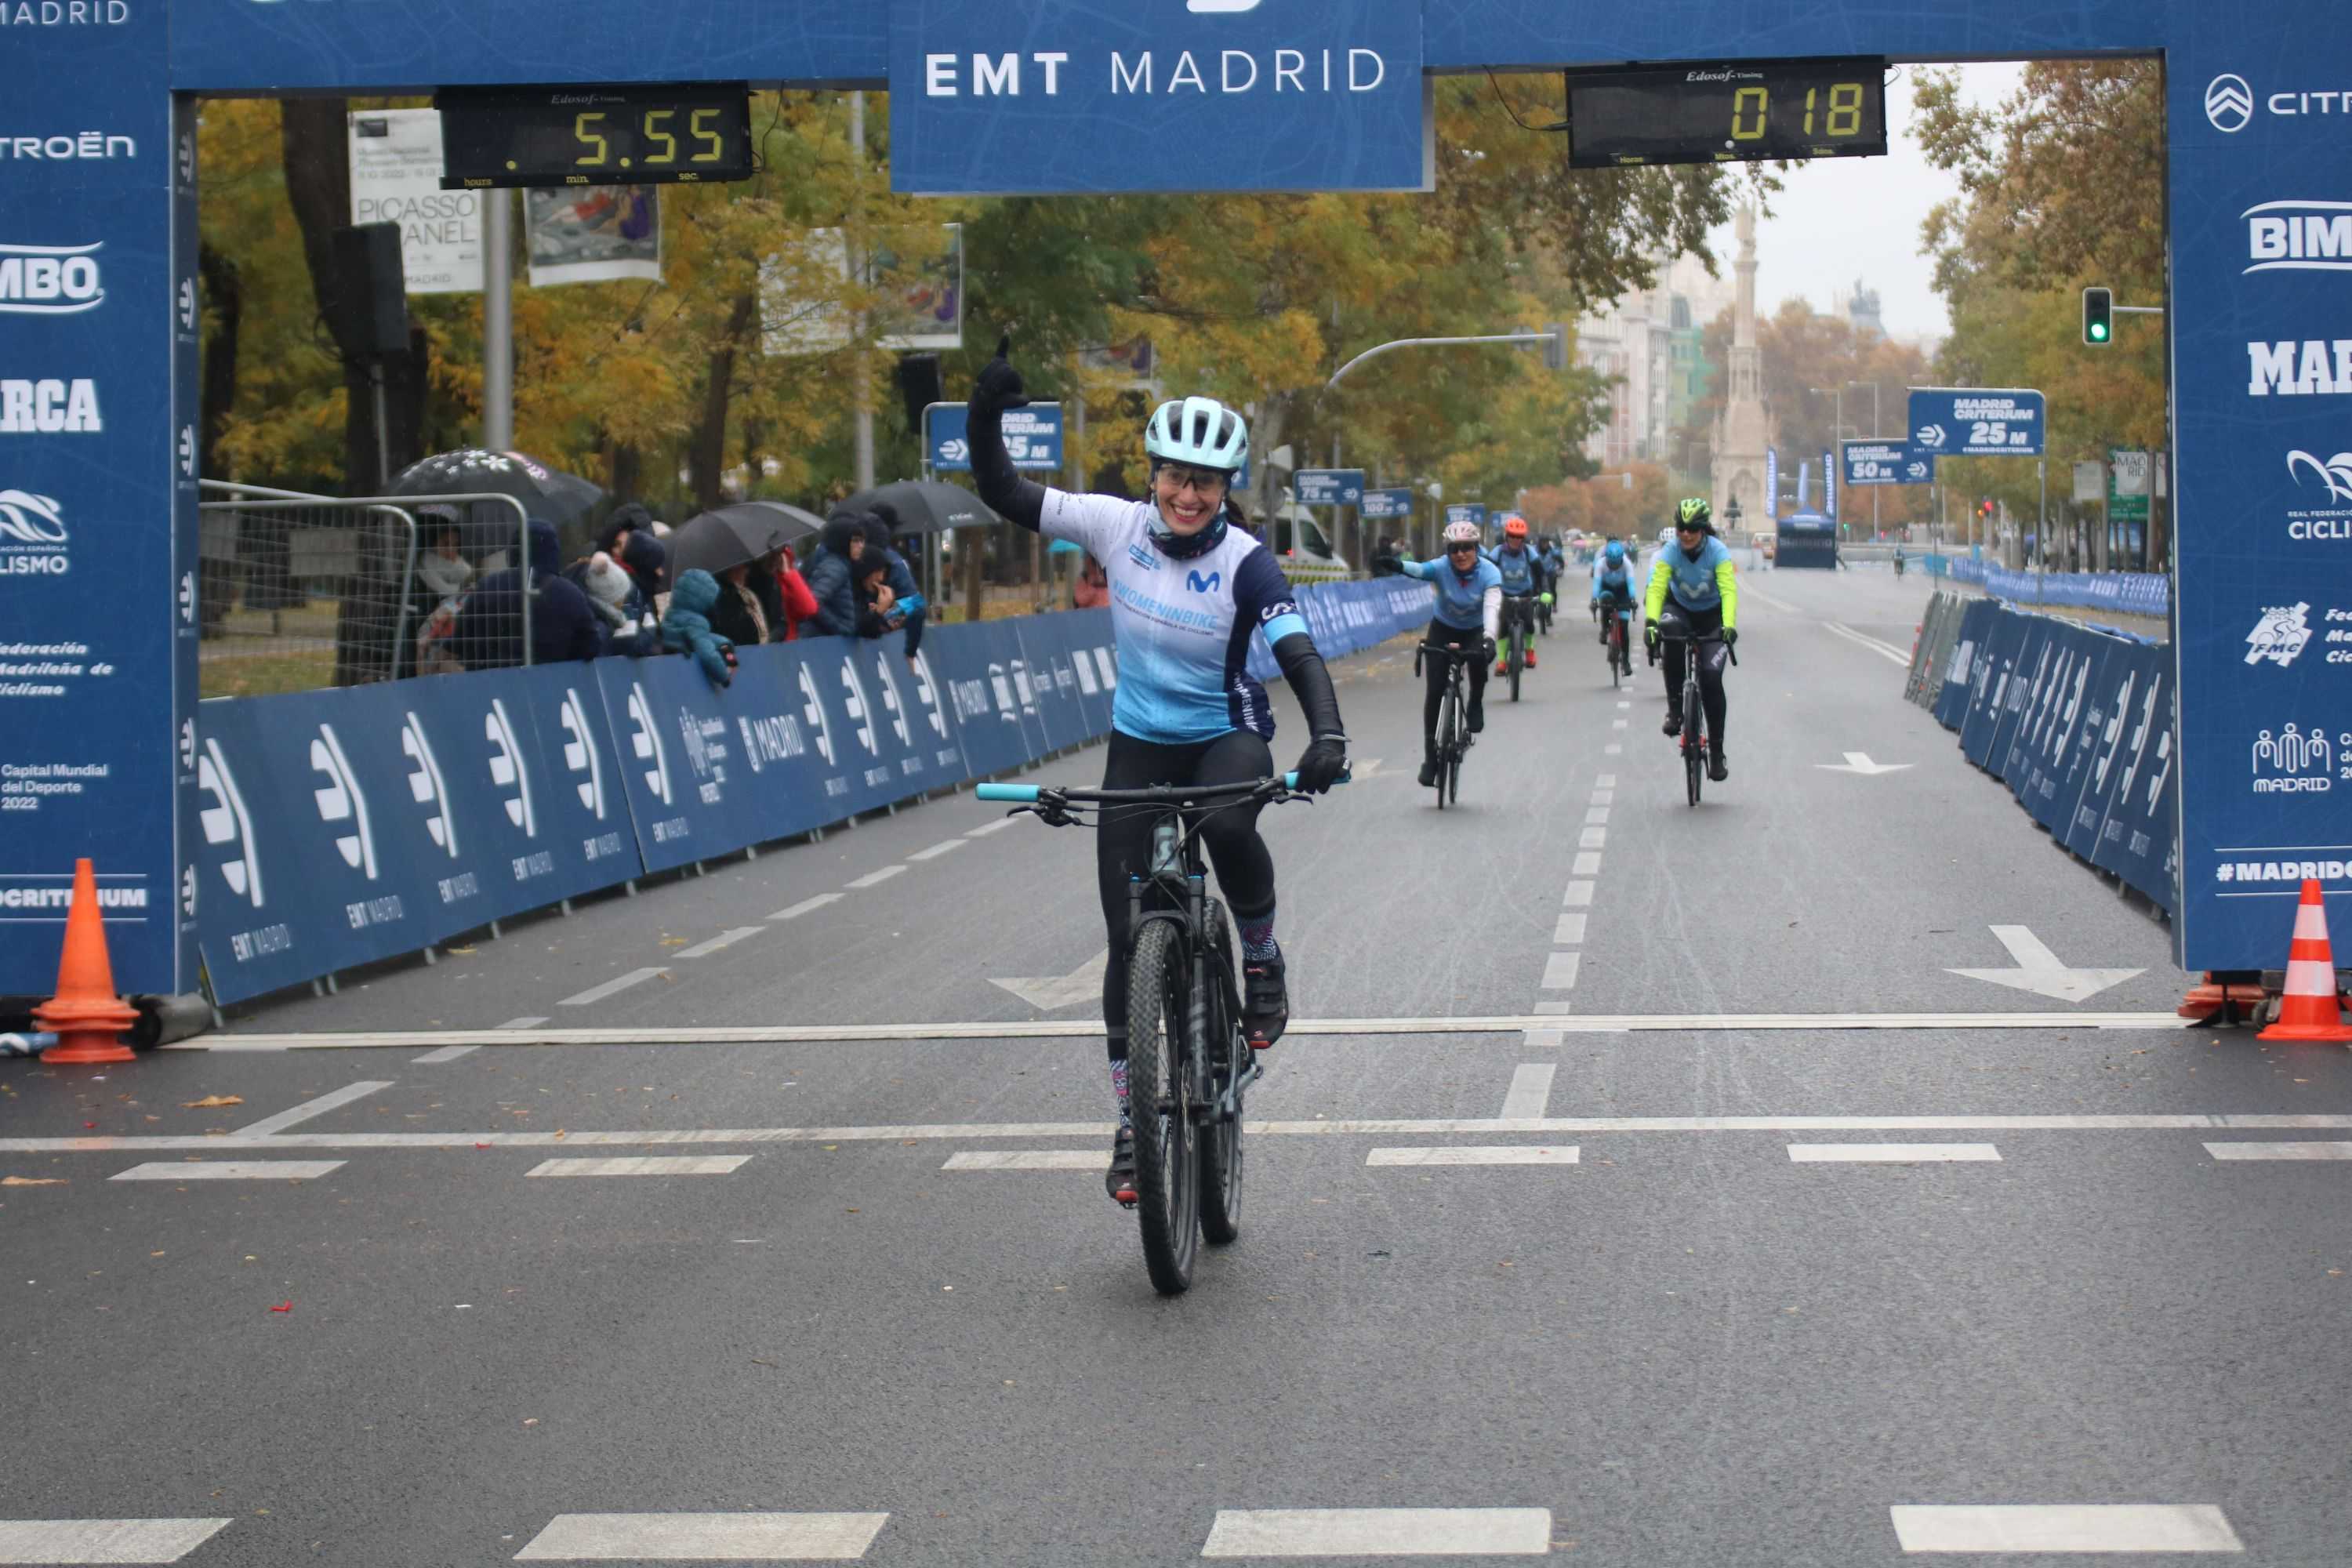 El proyecto Women In Bike se da cita en el Madrid Criterium